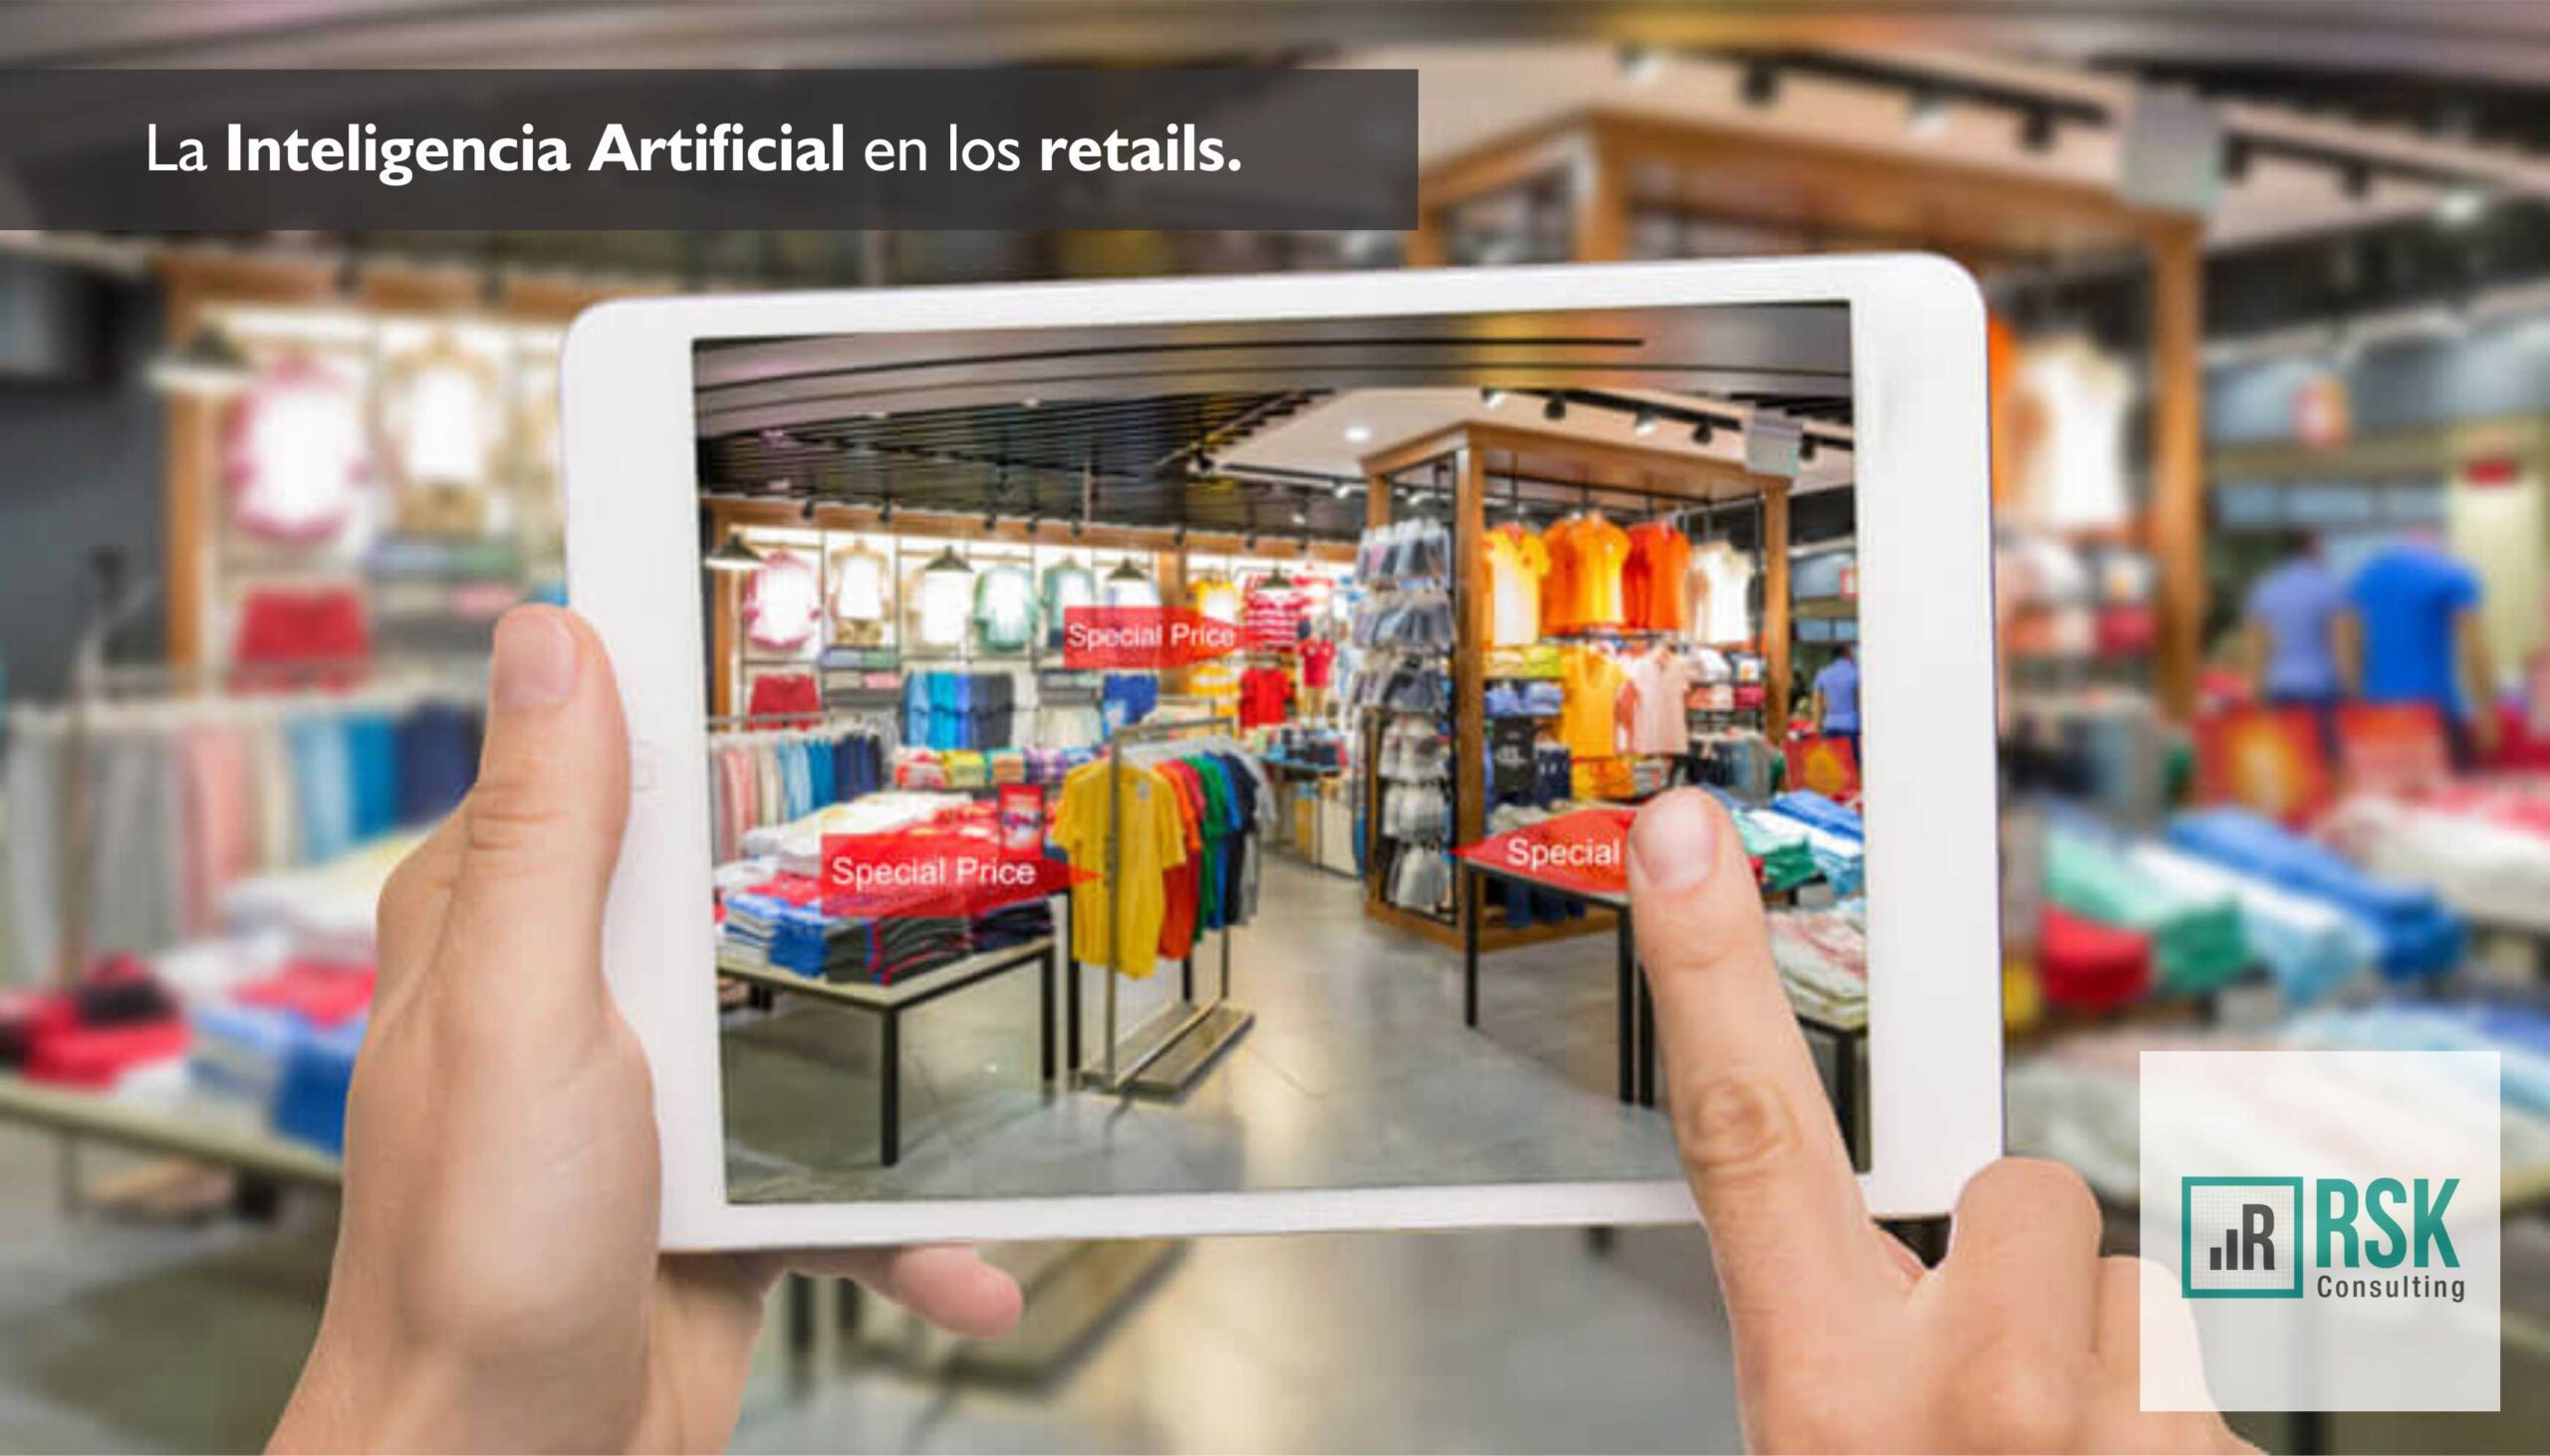 La Inteligencia Artificial en los retails